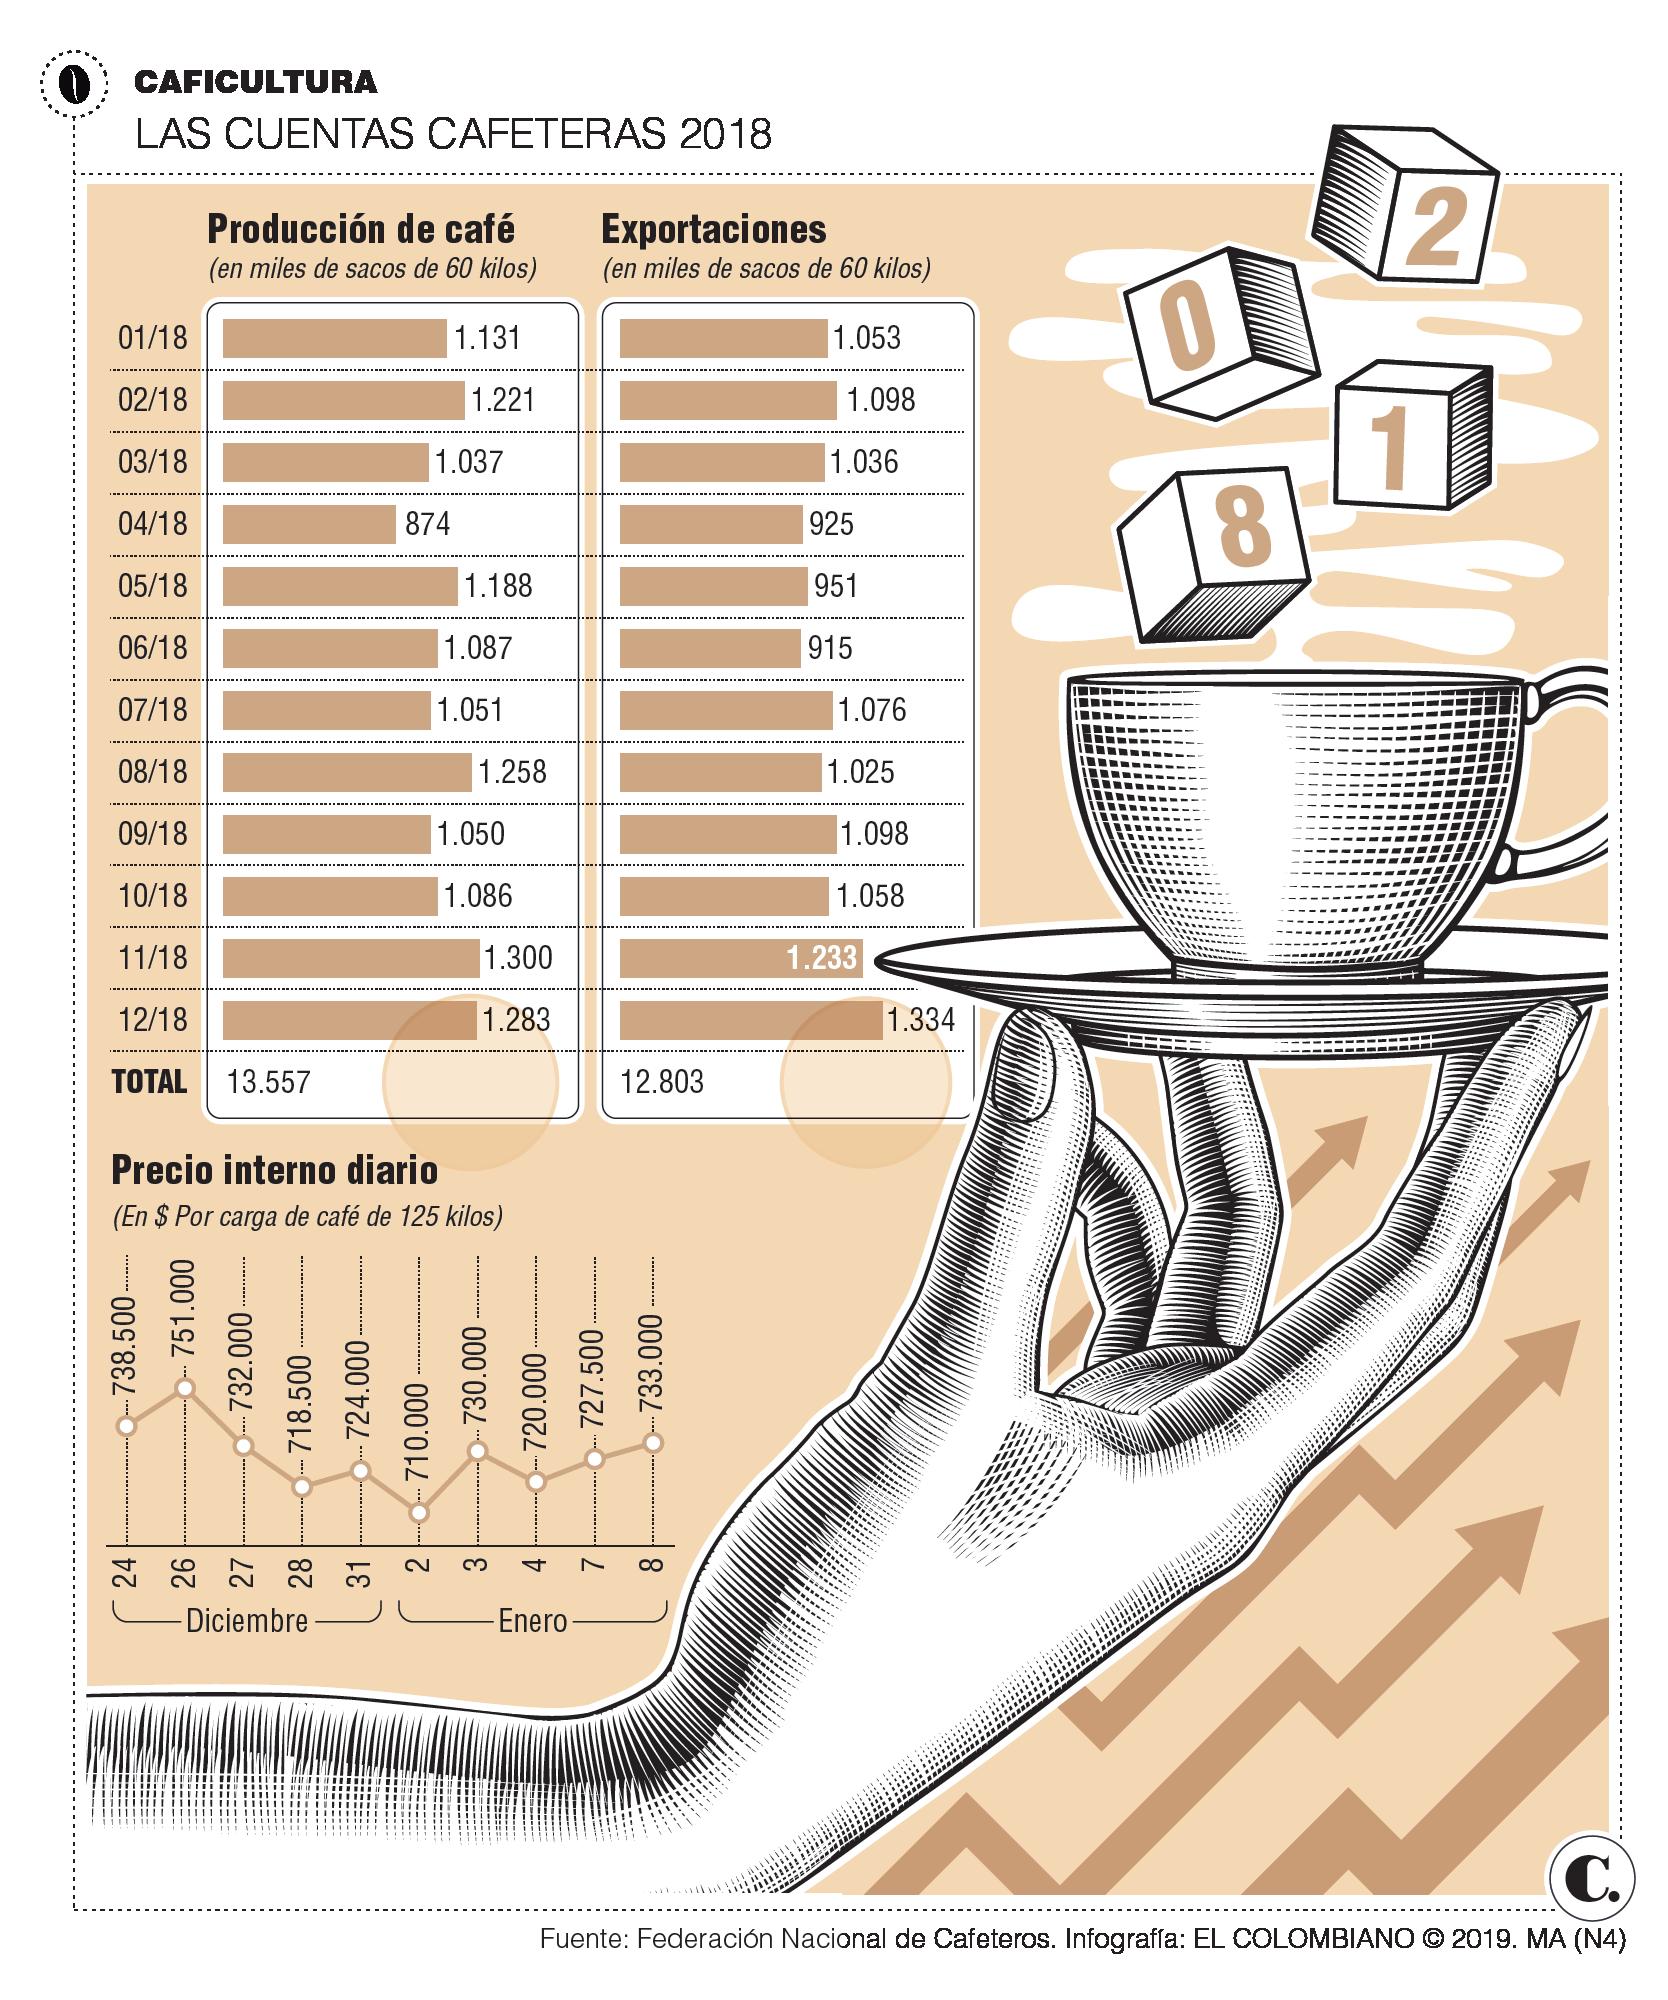 Producción cafetera tiene meta: 14 millones de sacos